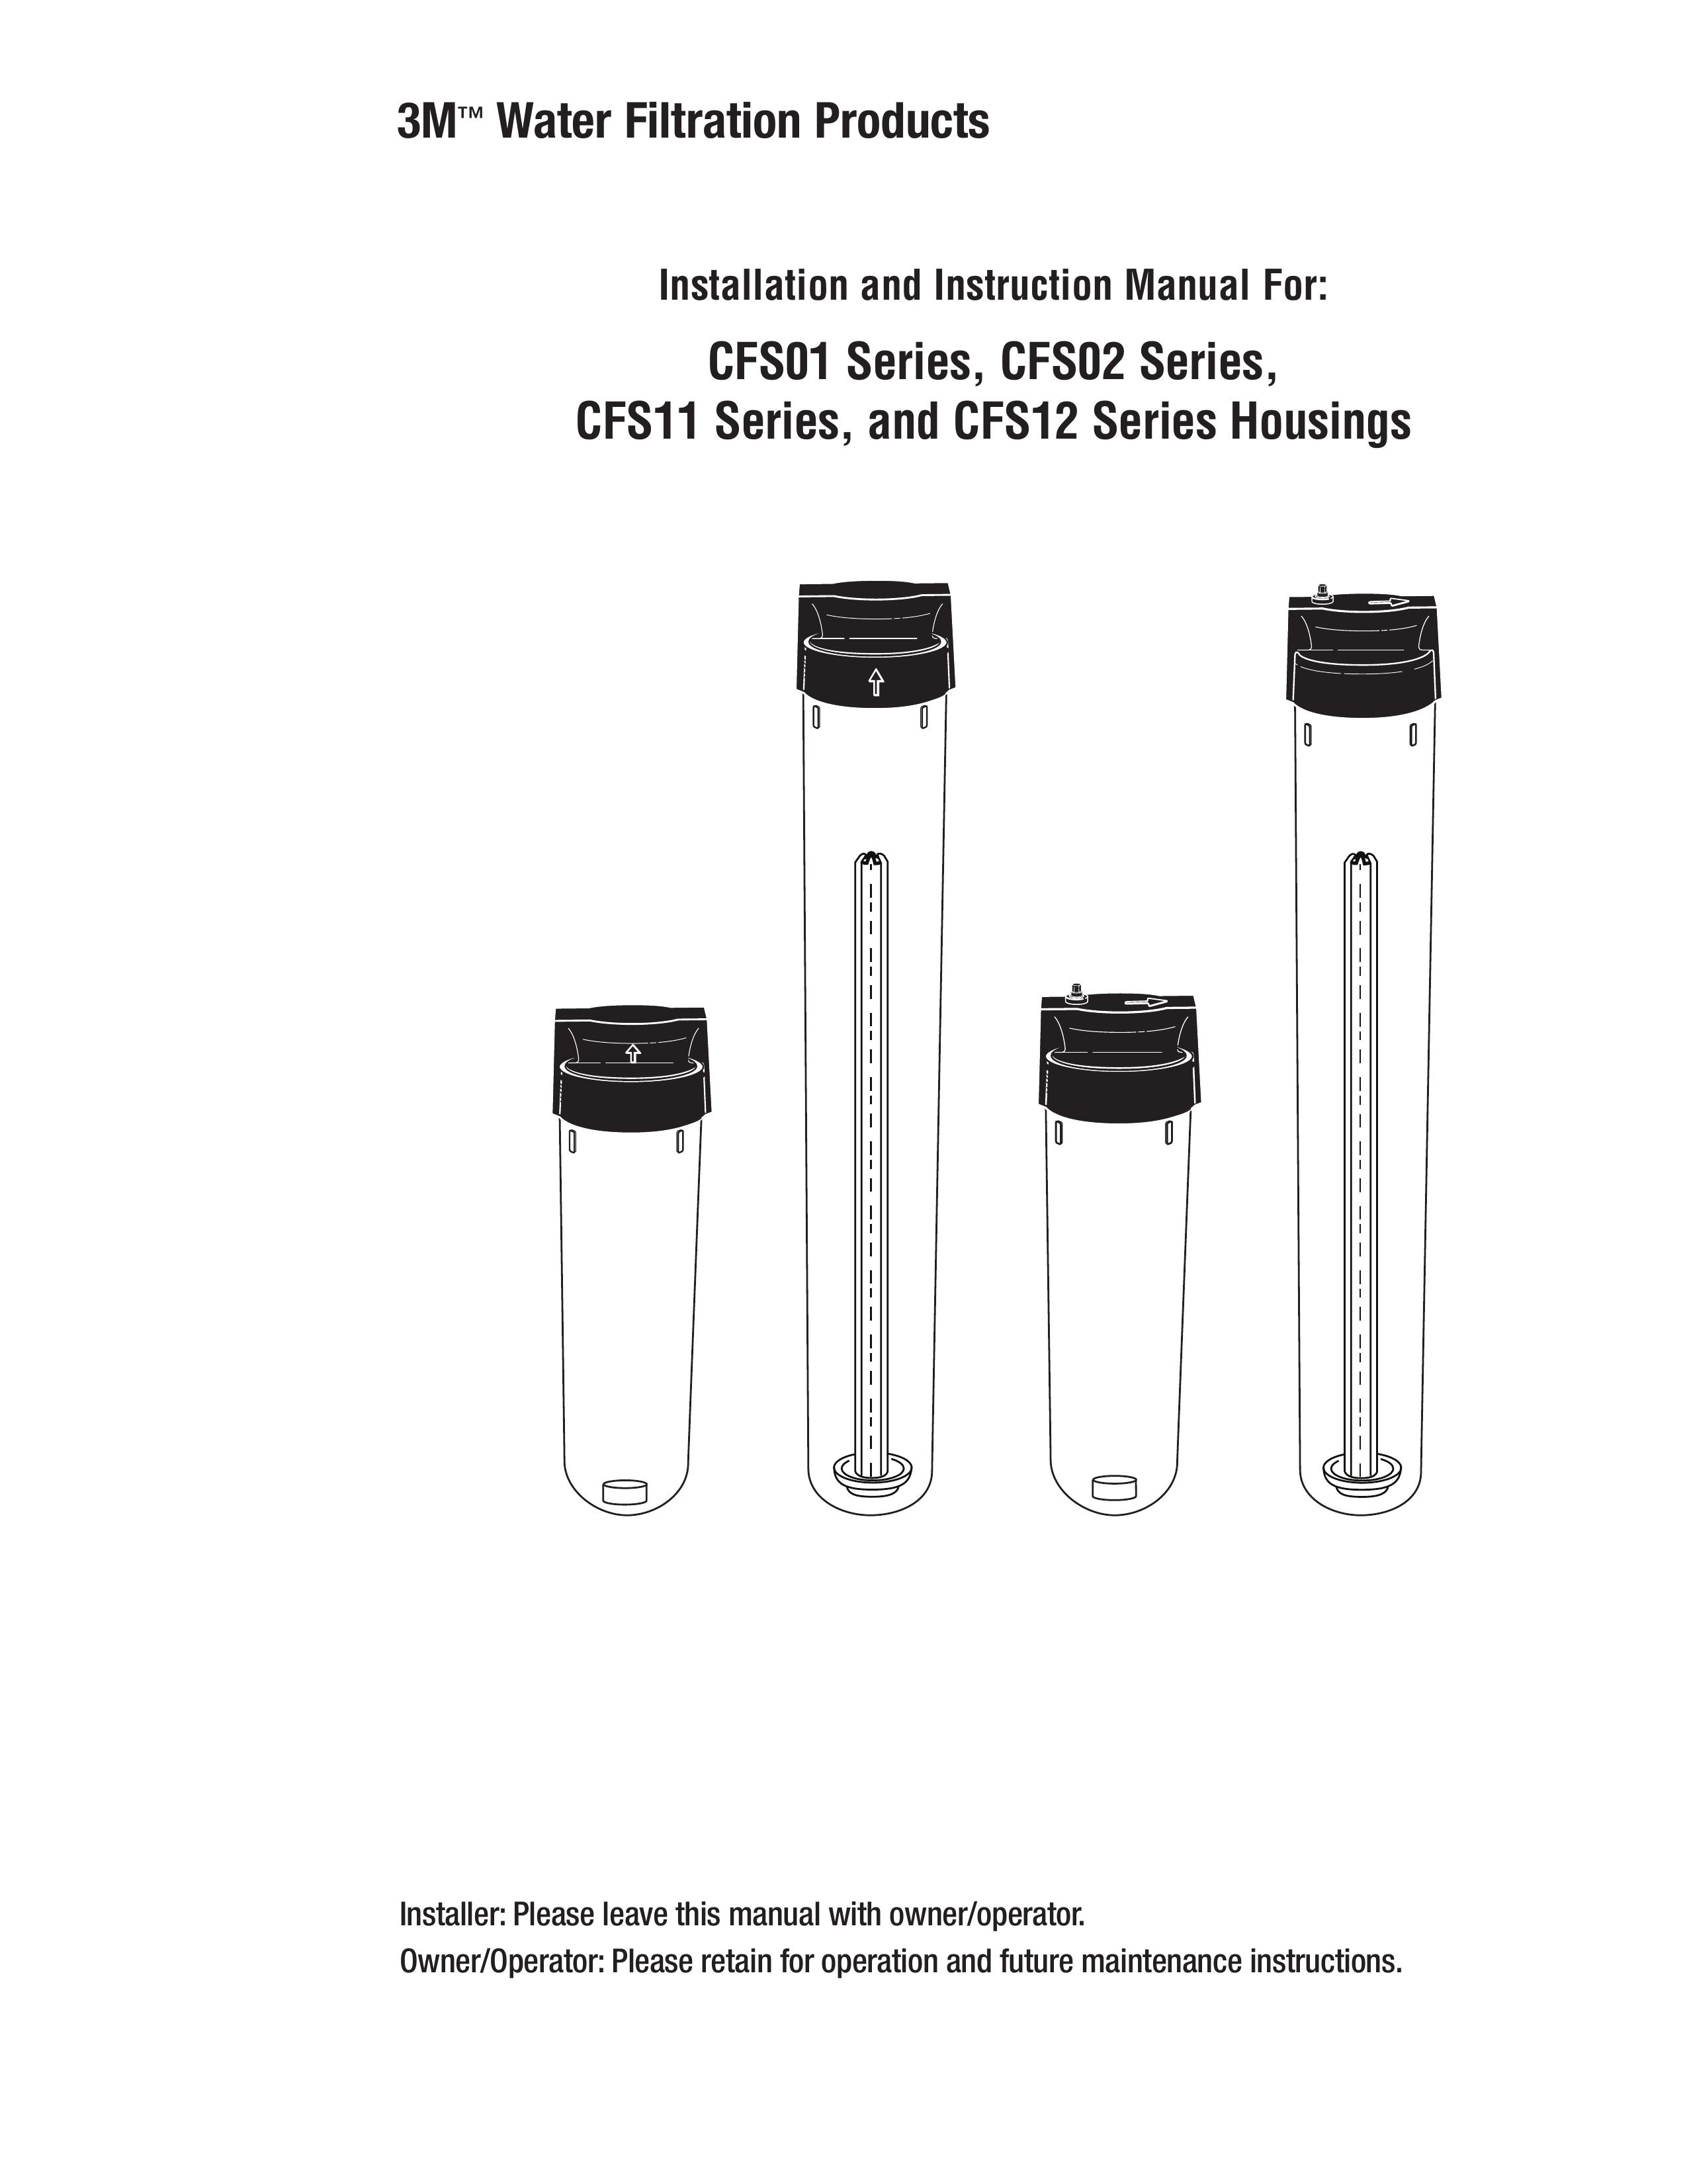 3M CFS12 Water Dispenser User Manual